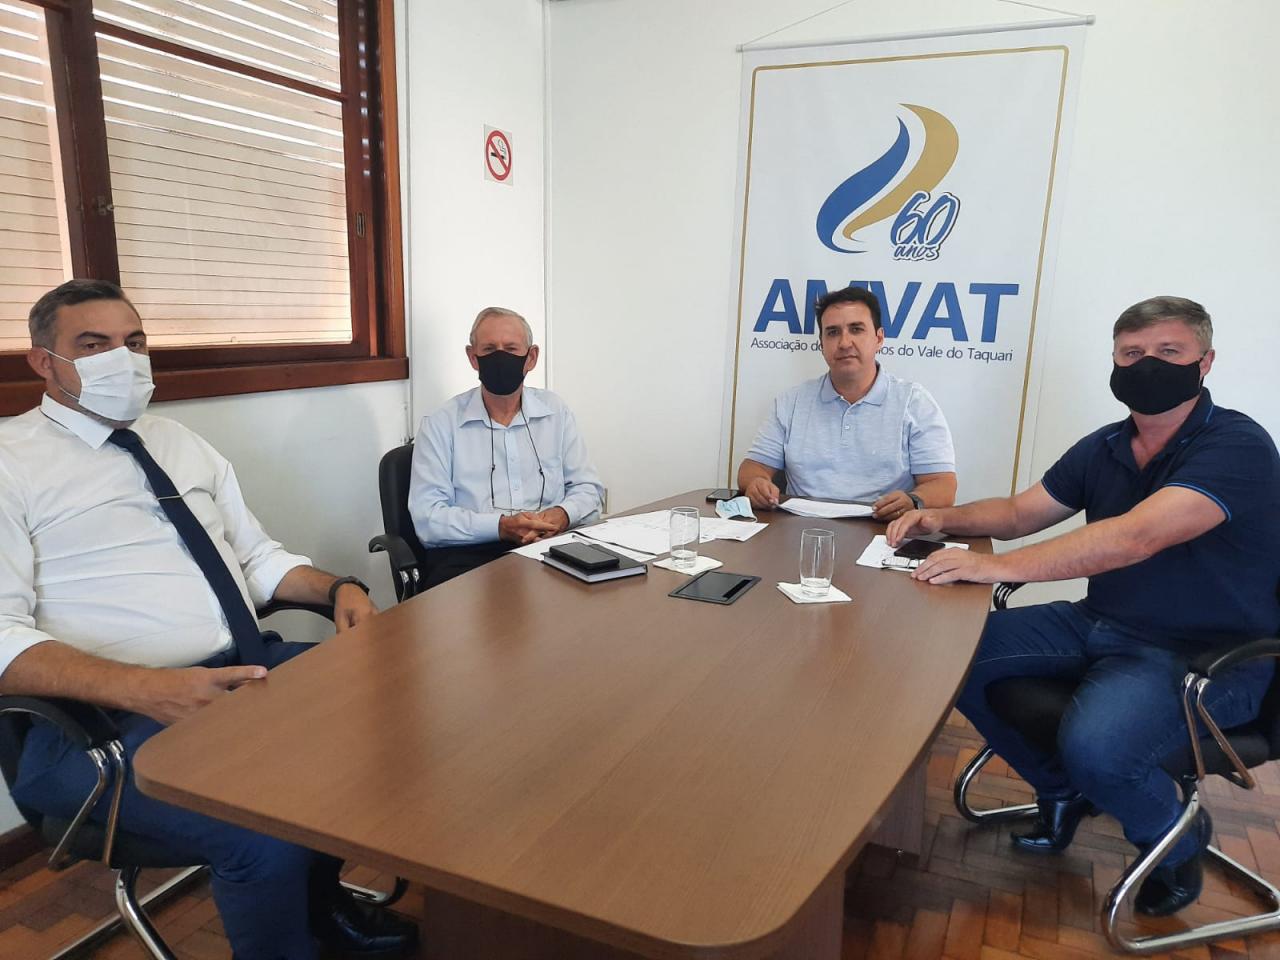 Encontro com representantes das duas entidades ocorreu em Estrela, na sede da Amvat